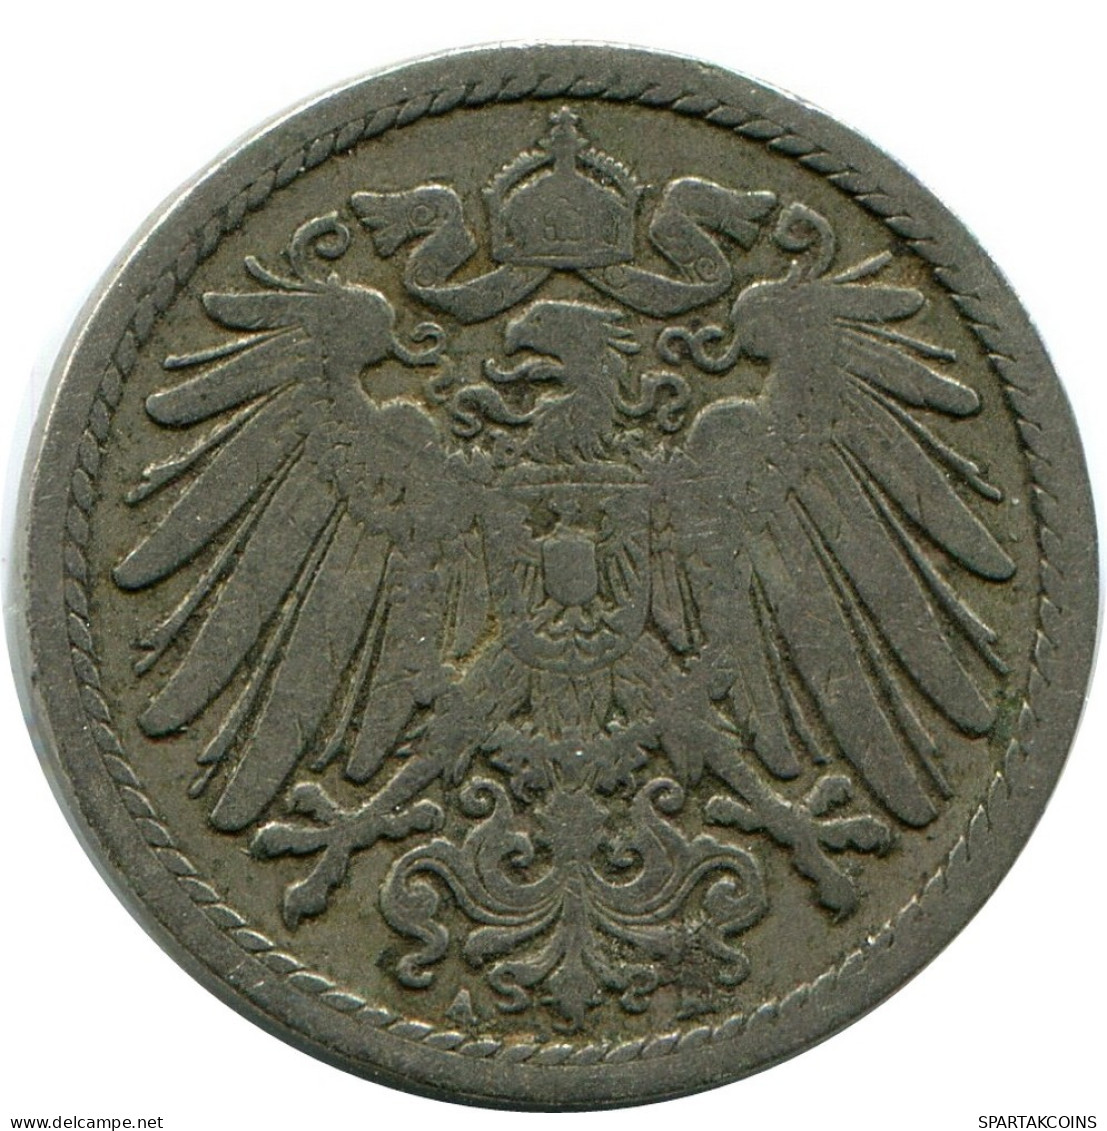 5 PFENNIG 1894 A GERMANY Coin #DB168.U.A